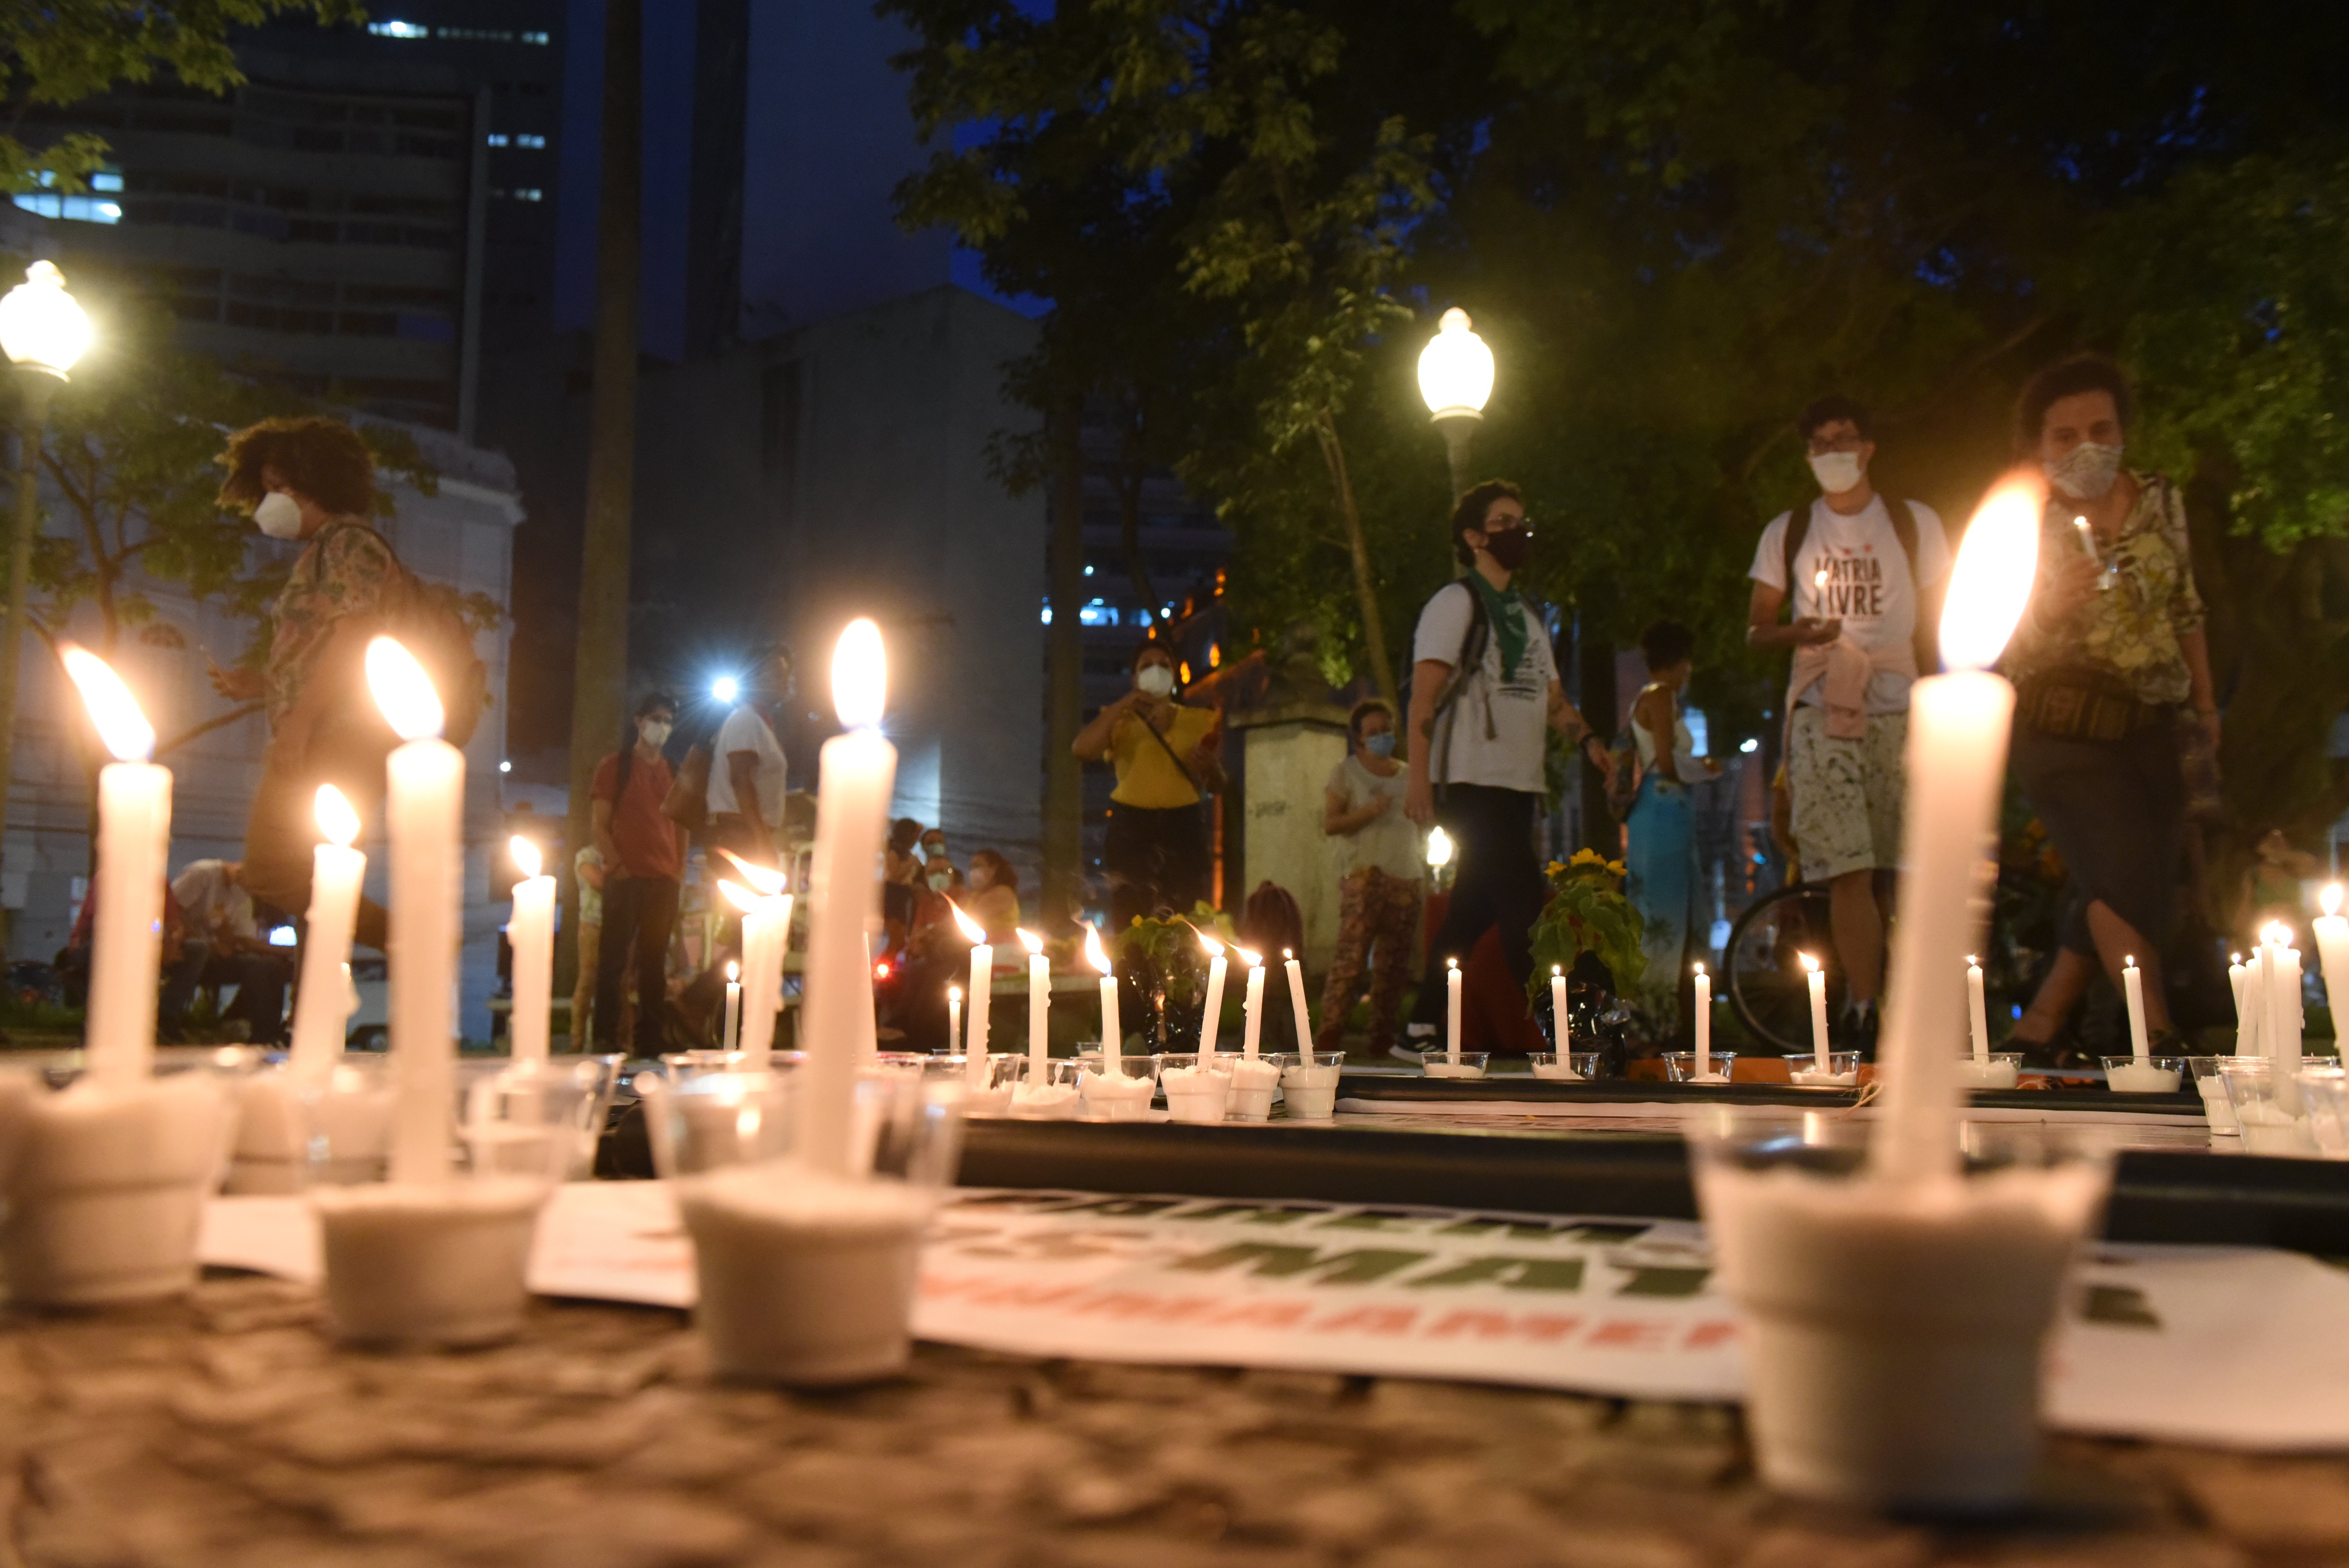  Vitória - Vigília pelo fim dos feminicídios  e da violência contra as mulheres, realizado na Praça Costa Pereira, Centro de Vitória